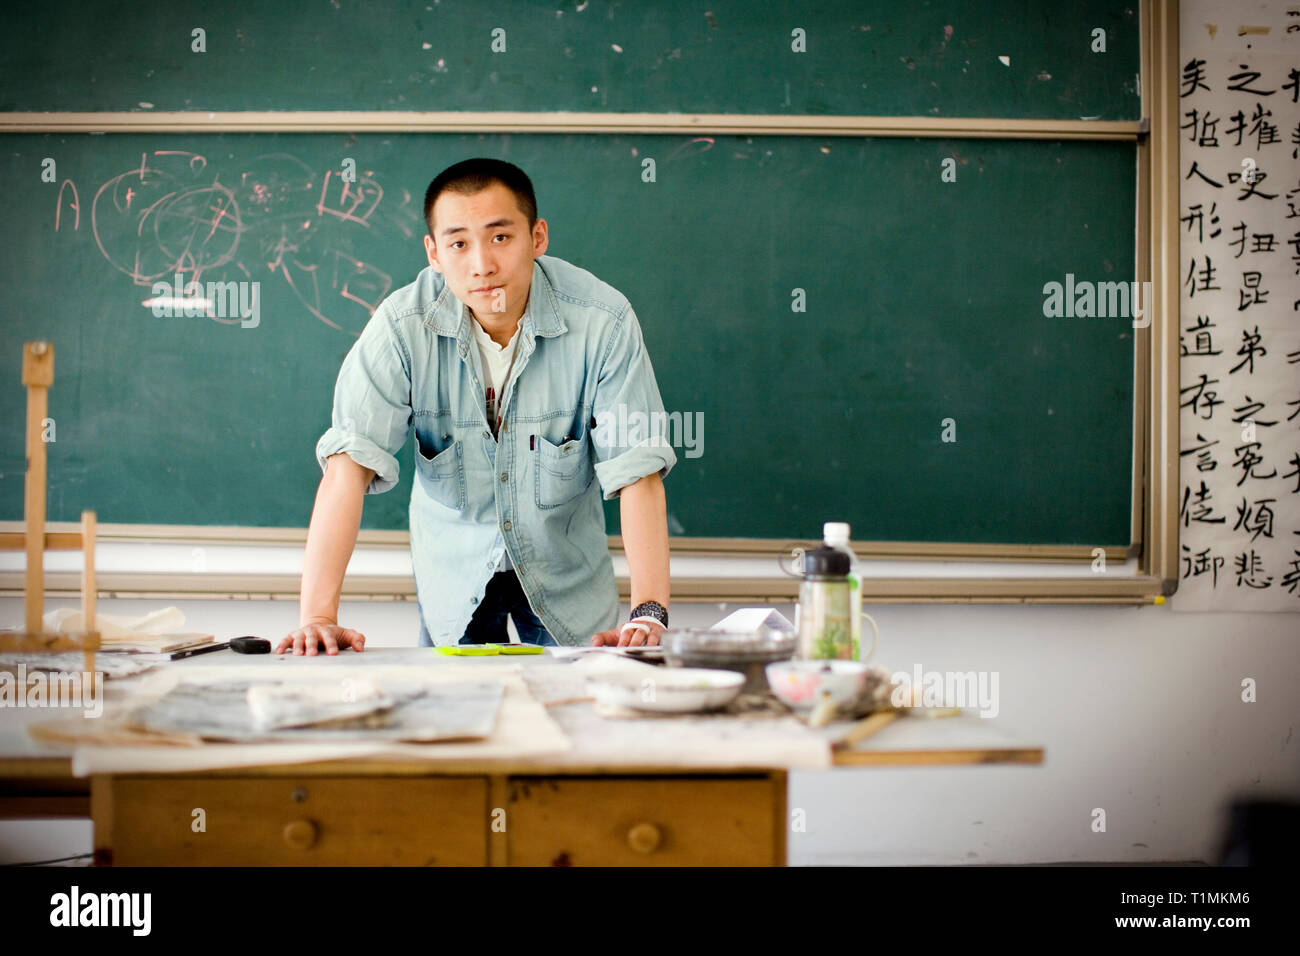 Porträt eines jungen erwachsenen Mann stand in der Nähe einer Kreidetafel in einem Klassenzimmer. Stockfoto